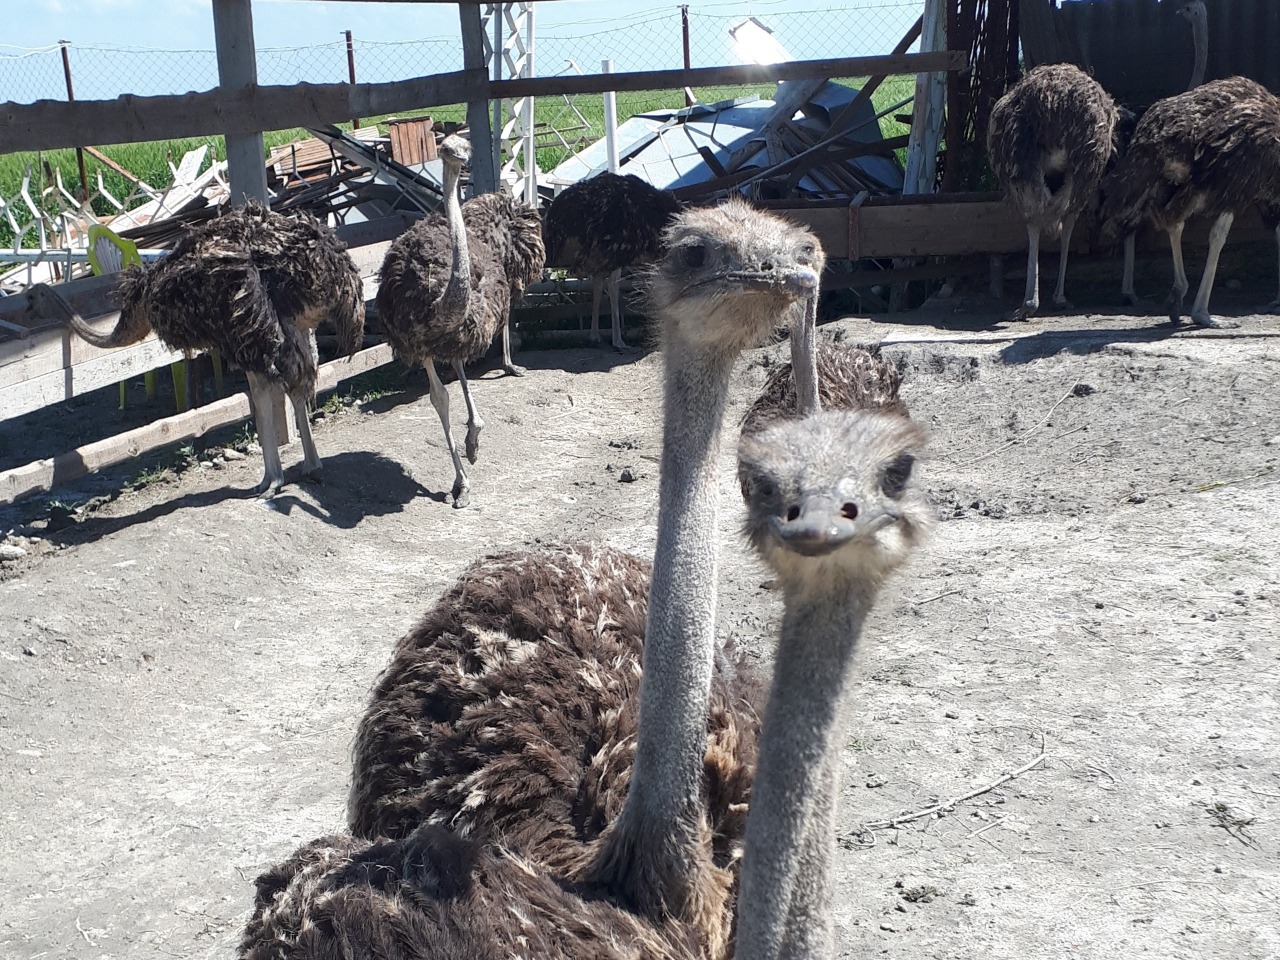 Контактный зоопарк в Челеке: в гости к страусам  | Цена 255€, отзывы, описание экскурсии